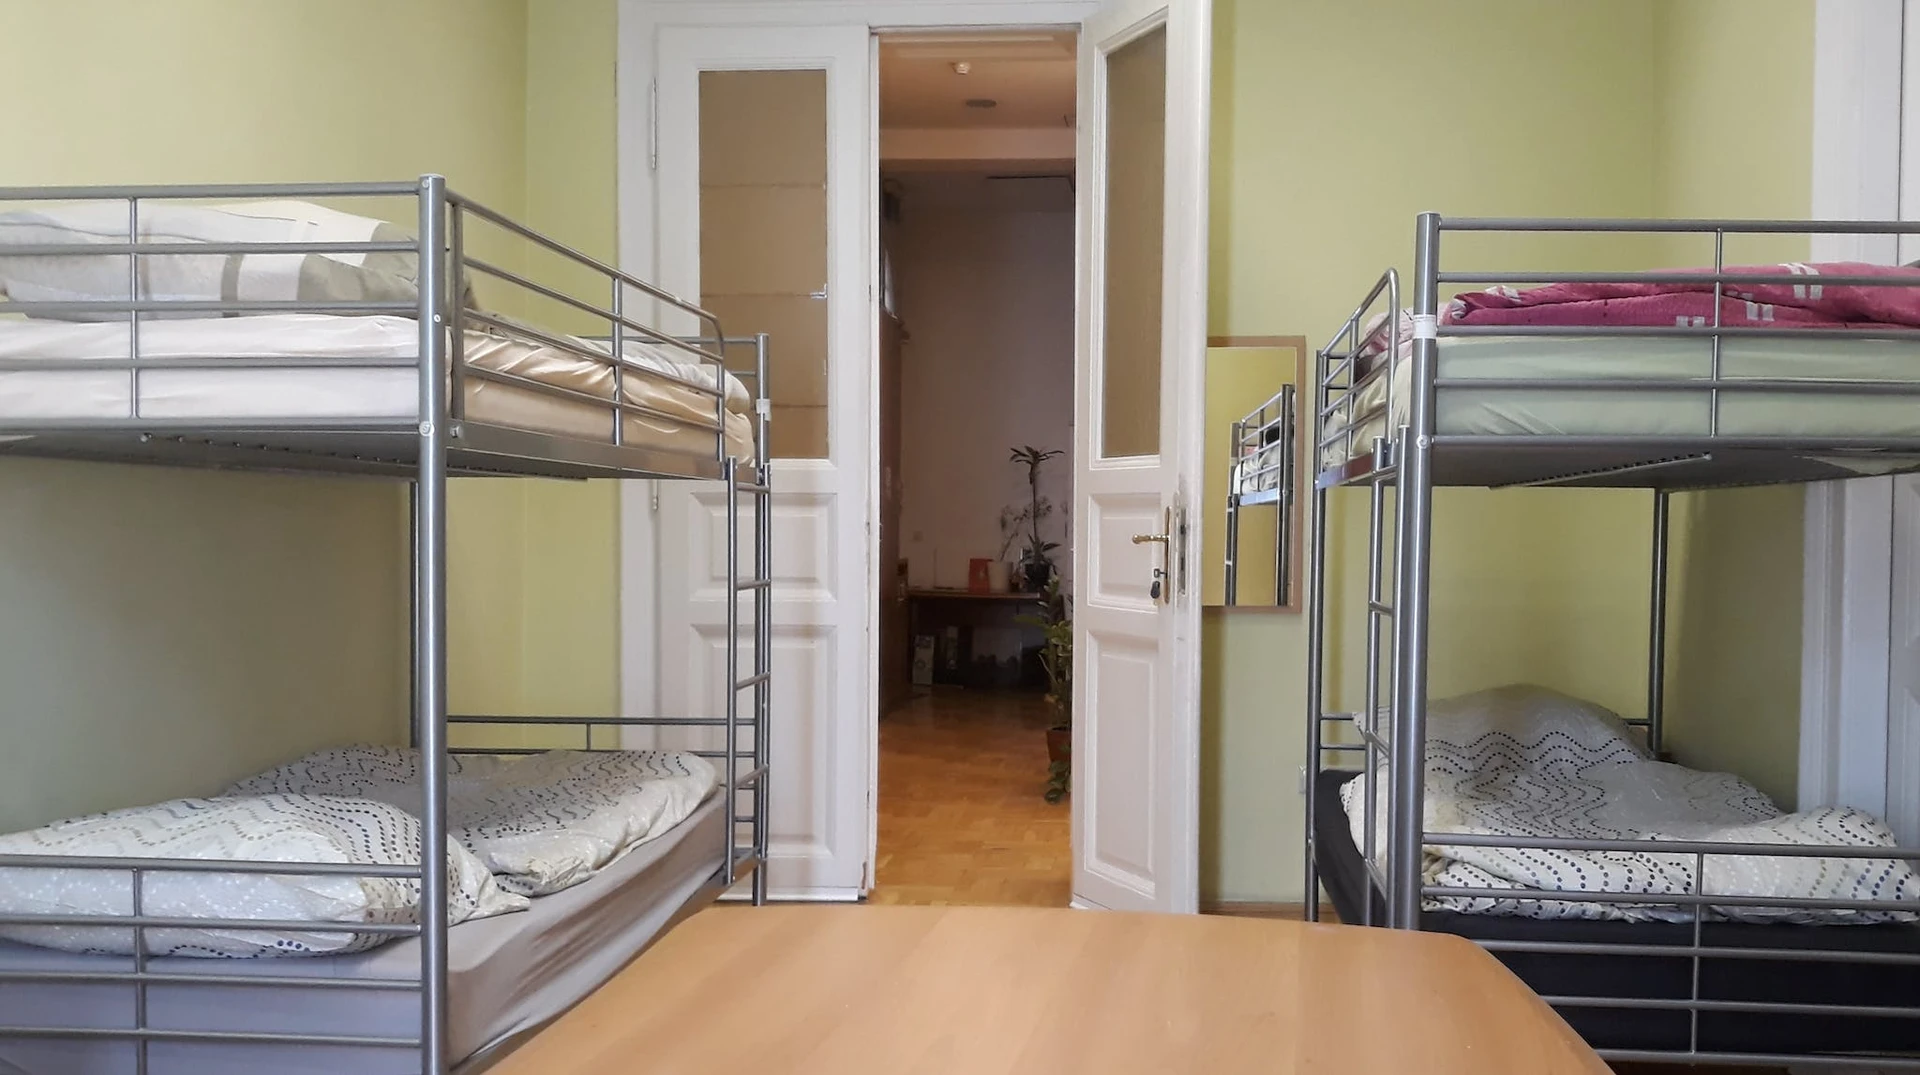 Chambre en colocation dans un appartement de 3 chambres budapest